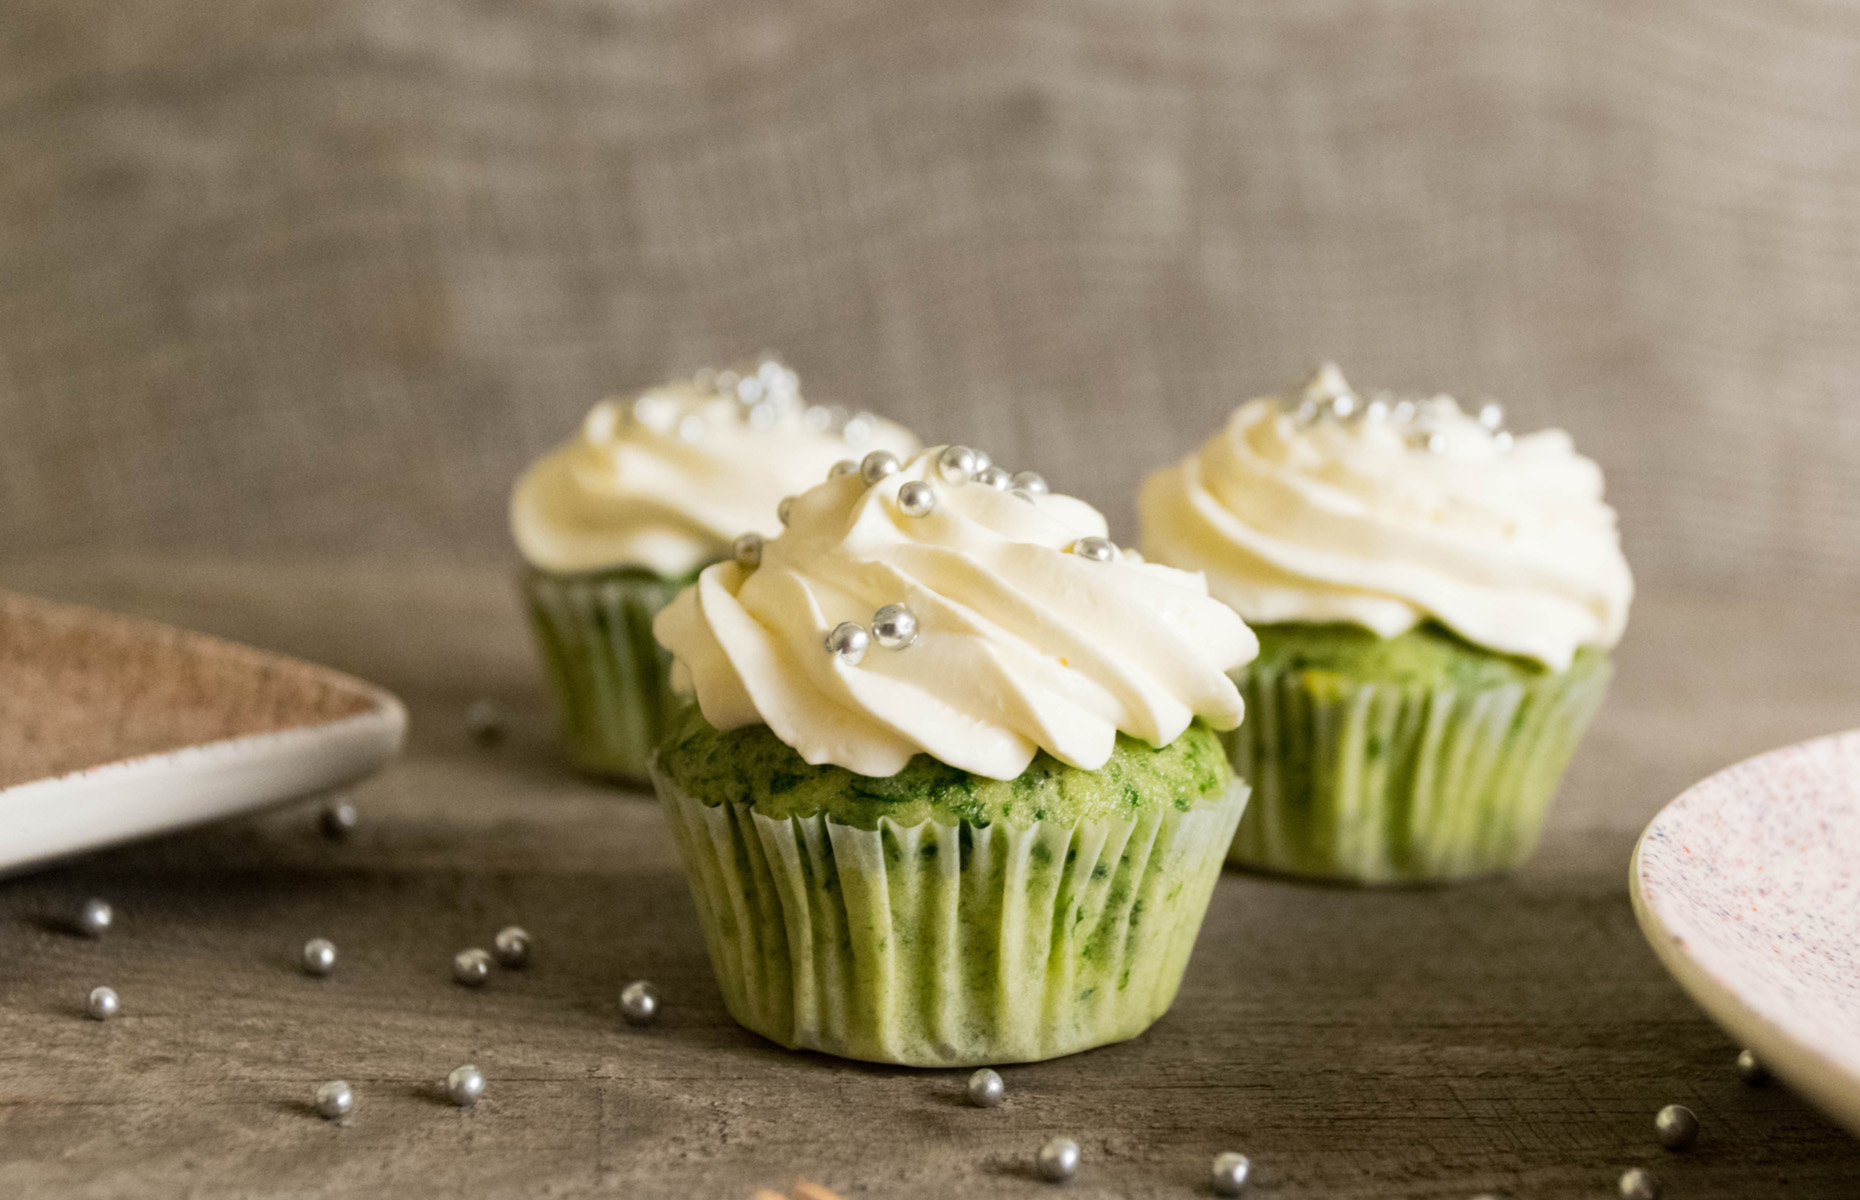 Kale and orange cupcakes (Image: Ainis Jankauskas/Shutterstock)